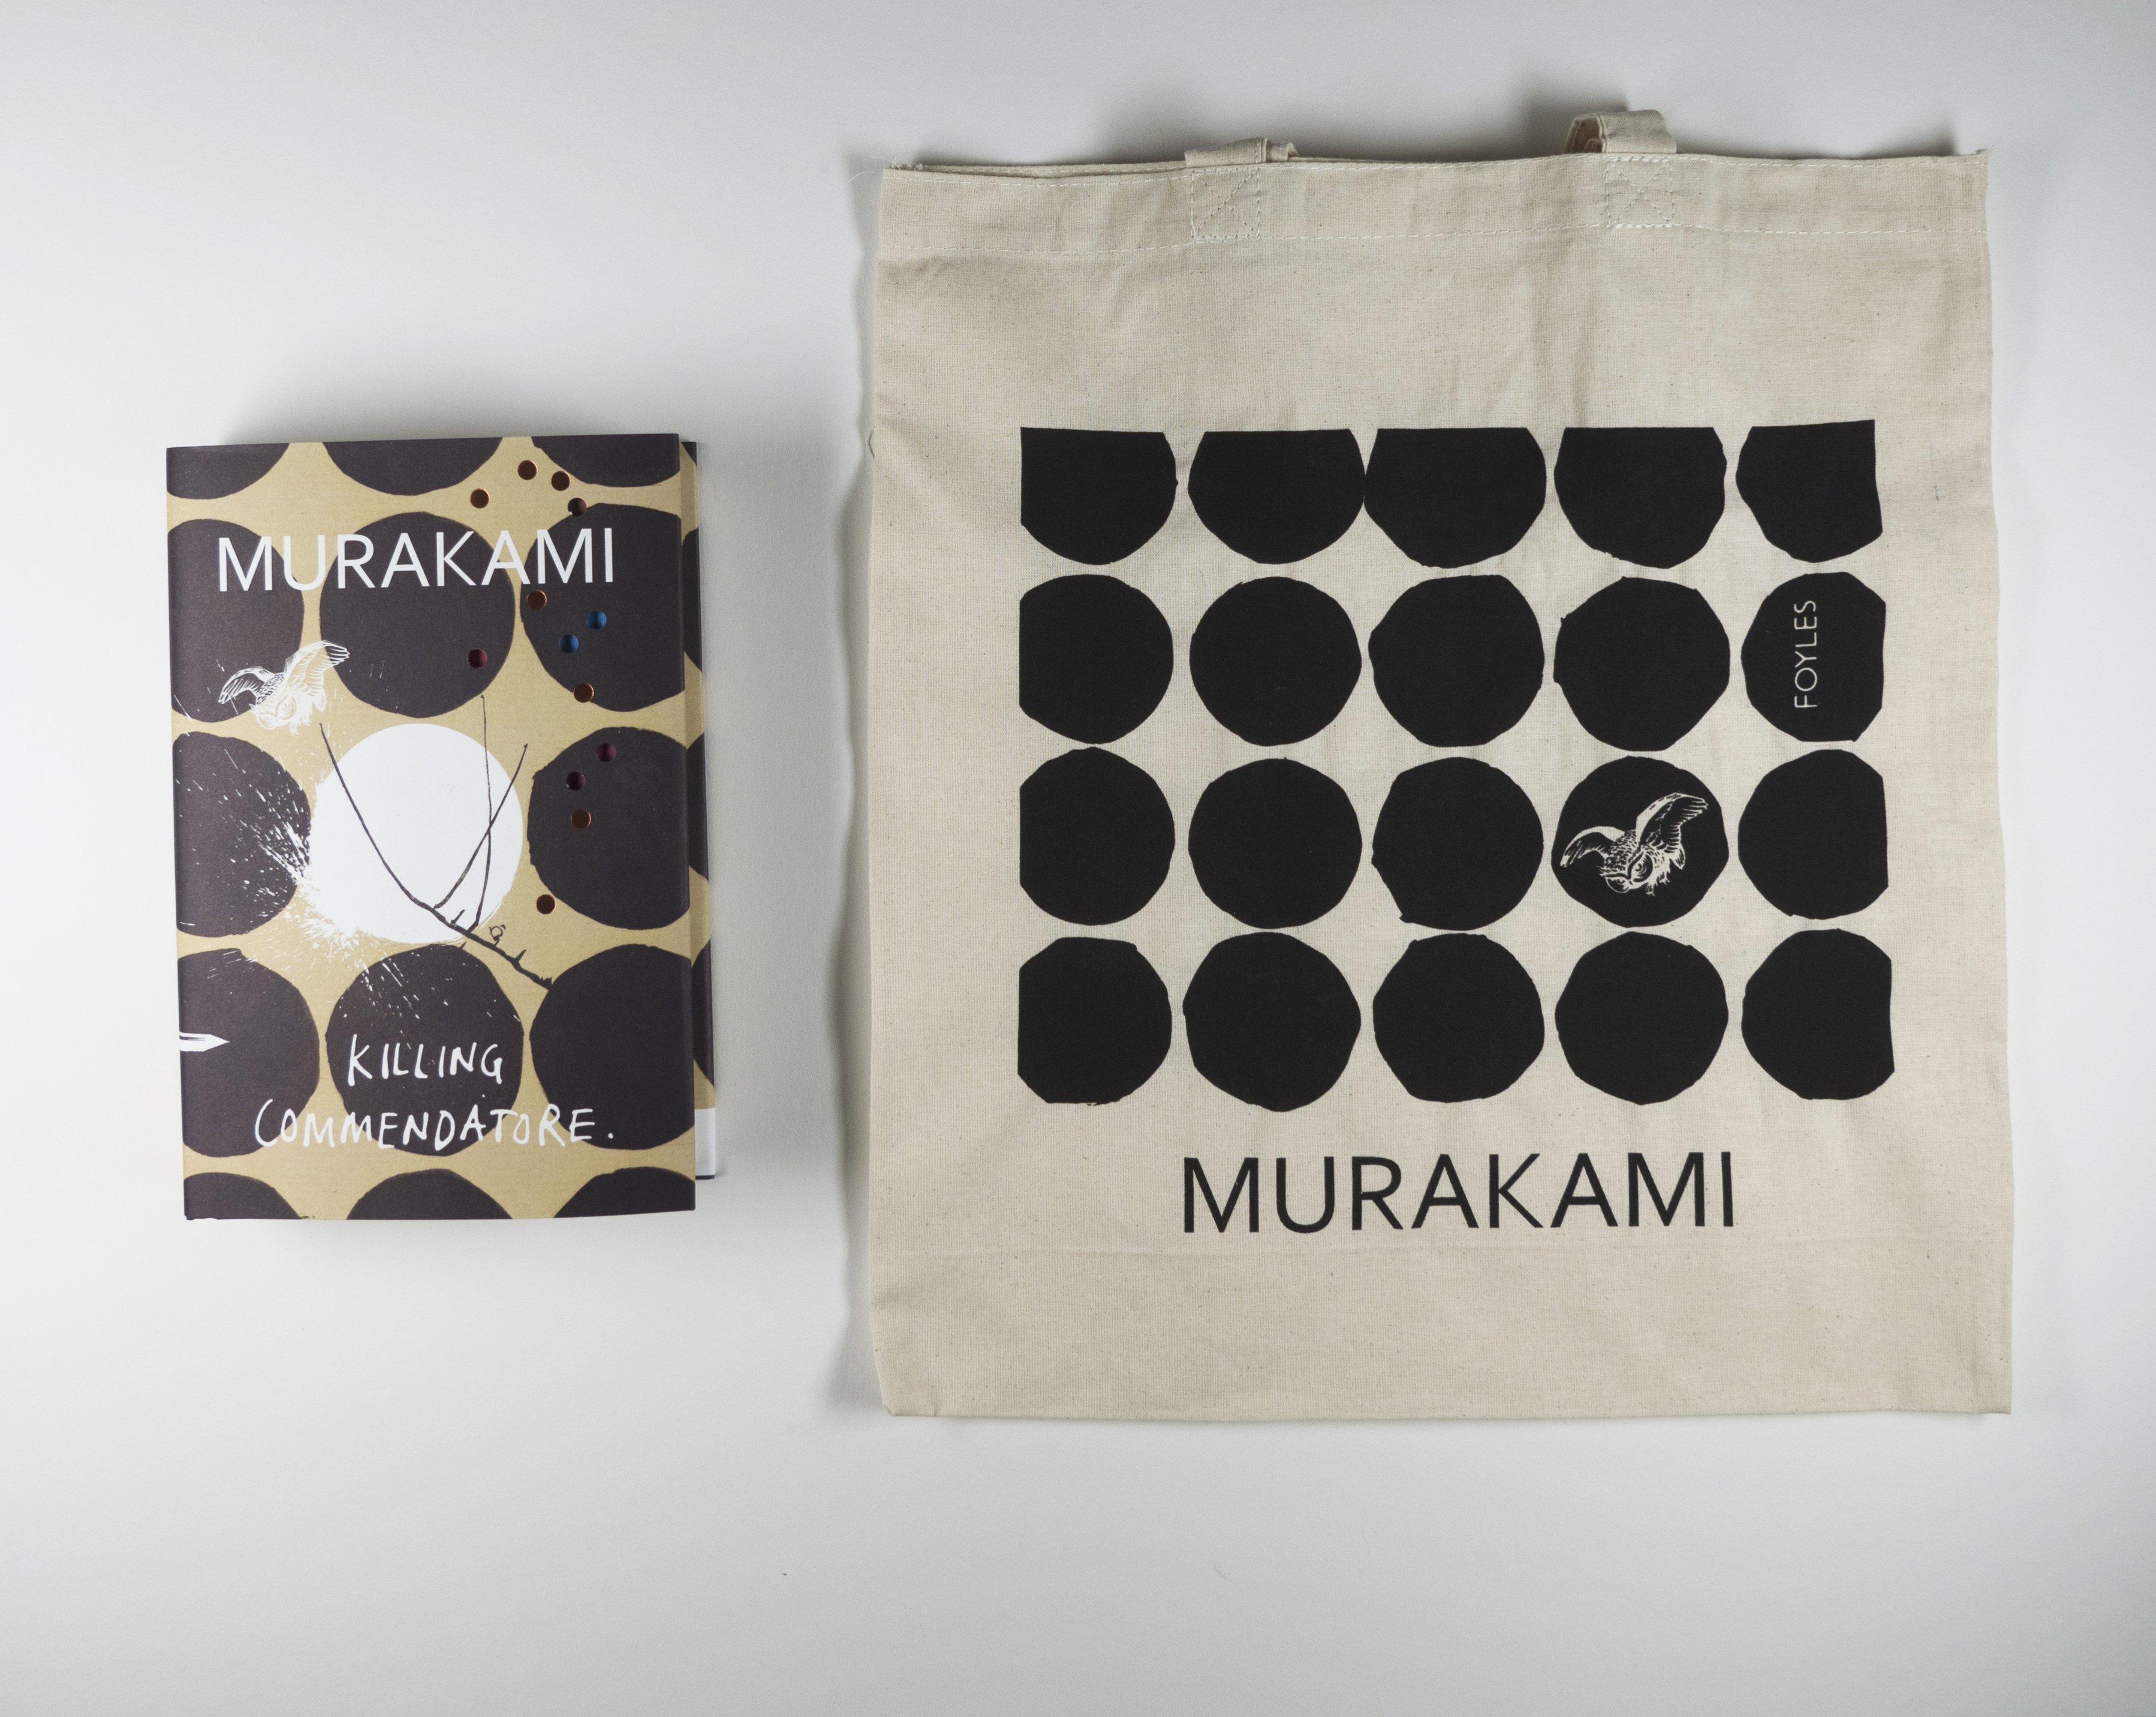 Haruki Murakami Signature | Tote Bag